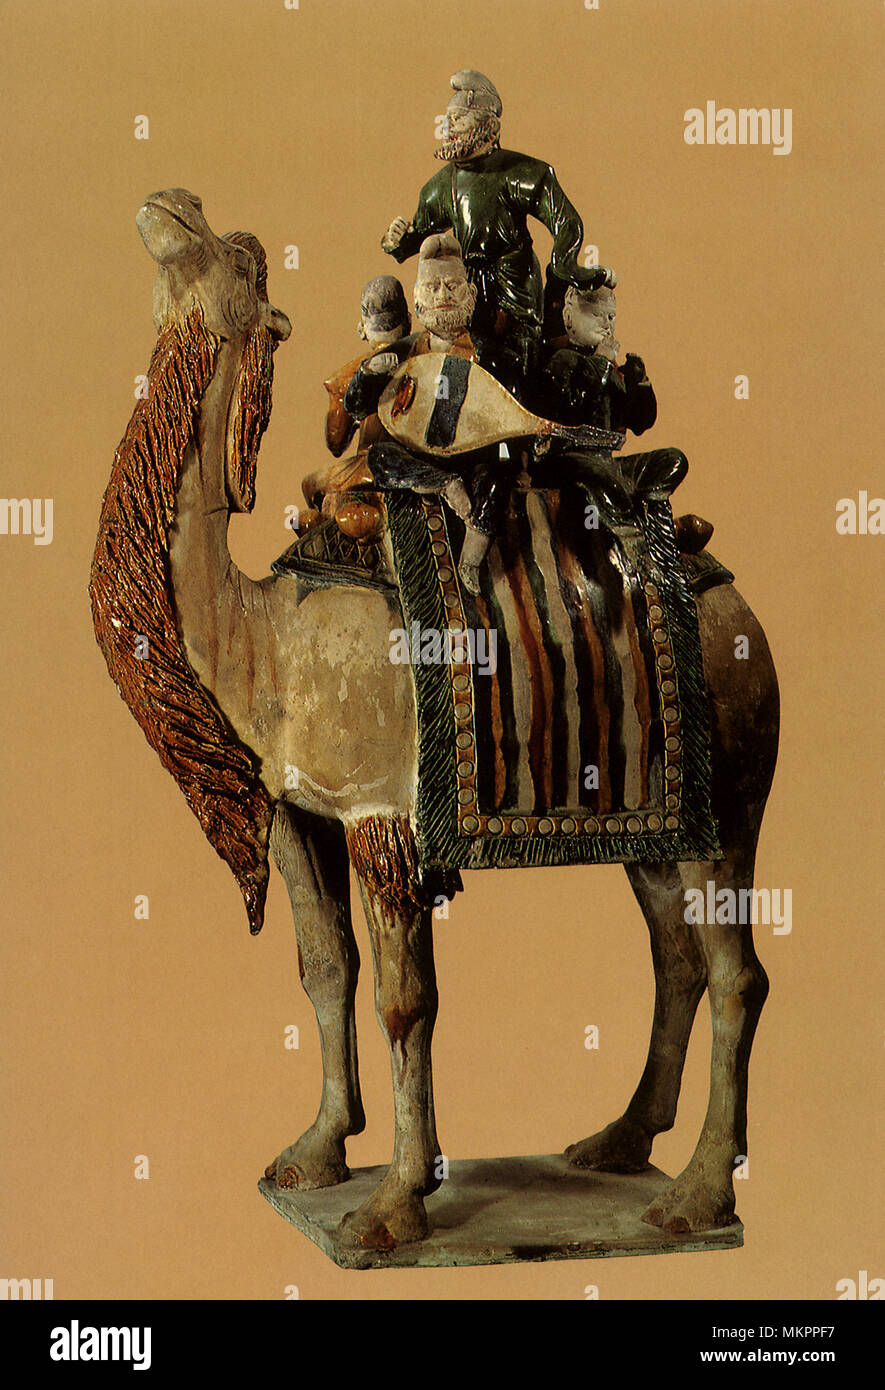 Statue von Musikern, montiert auf einem Kamel Stockfoto